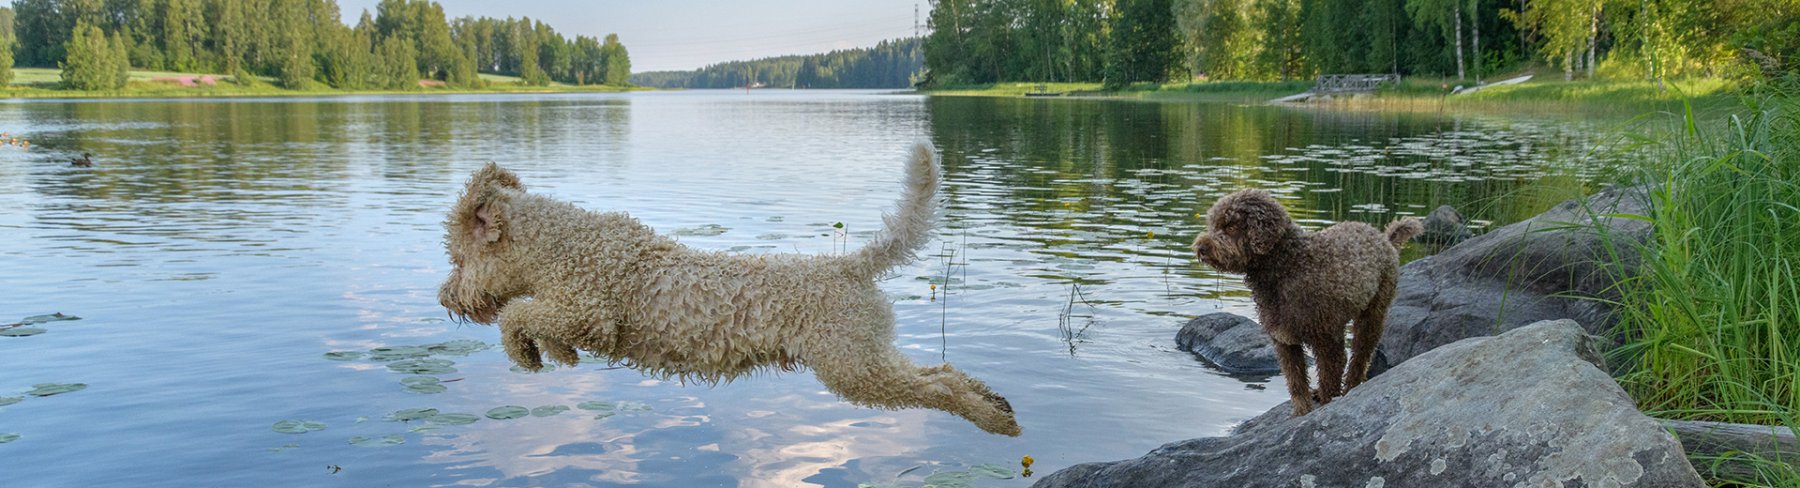 Ferienhausurlaub mit Hund in Finnland 